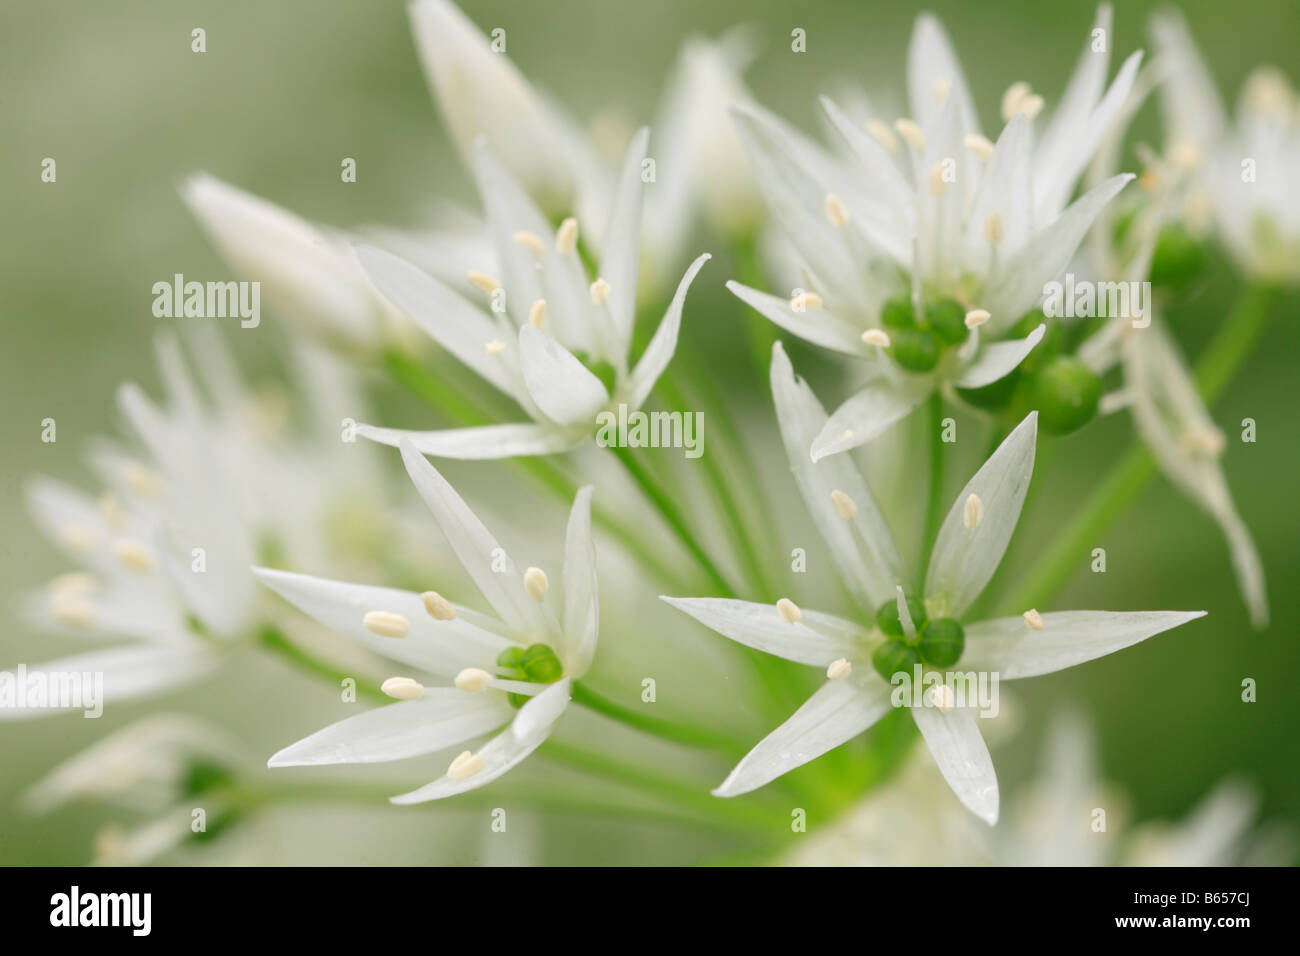 Fleurs de Ramsons ou ail sauvage (Allium ursinum).. Powys, Pays de Galles, Royaume-Uni. Banque D'Images